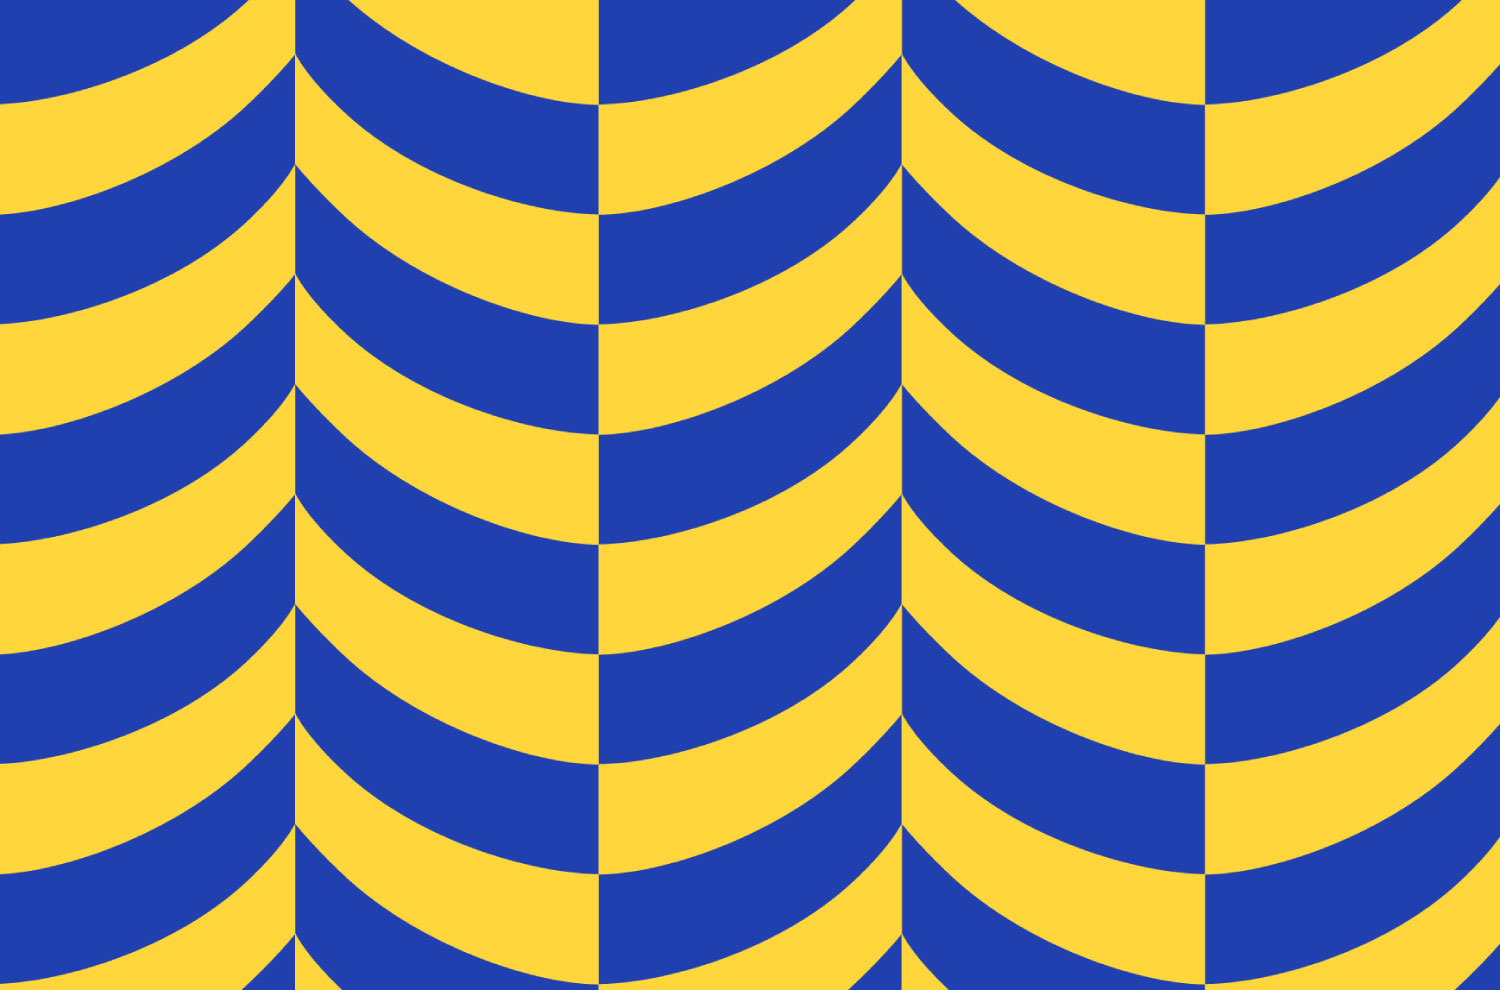 ココテープのイメージパターン。1列の中にブルーとイエローのカーブ状のラインが交互に繰り返されており、それが複数列で構成されている。